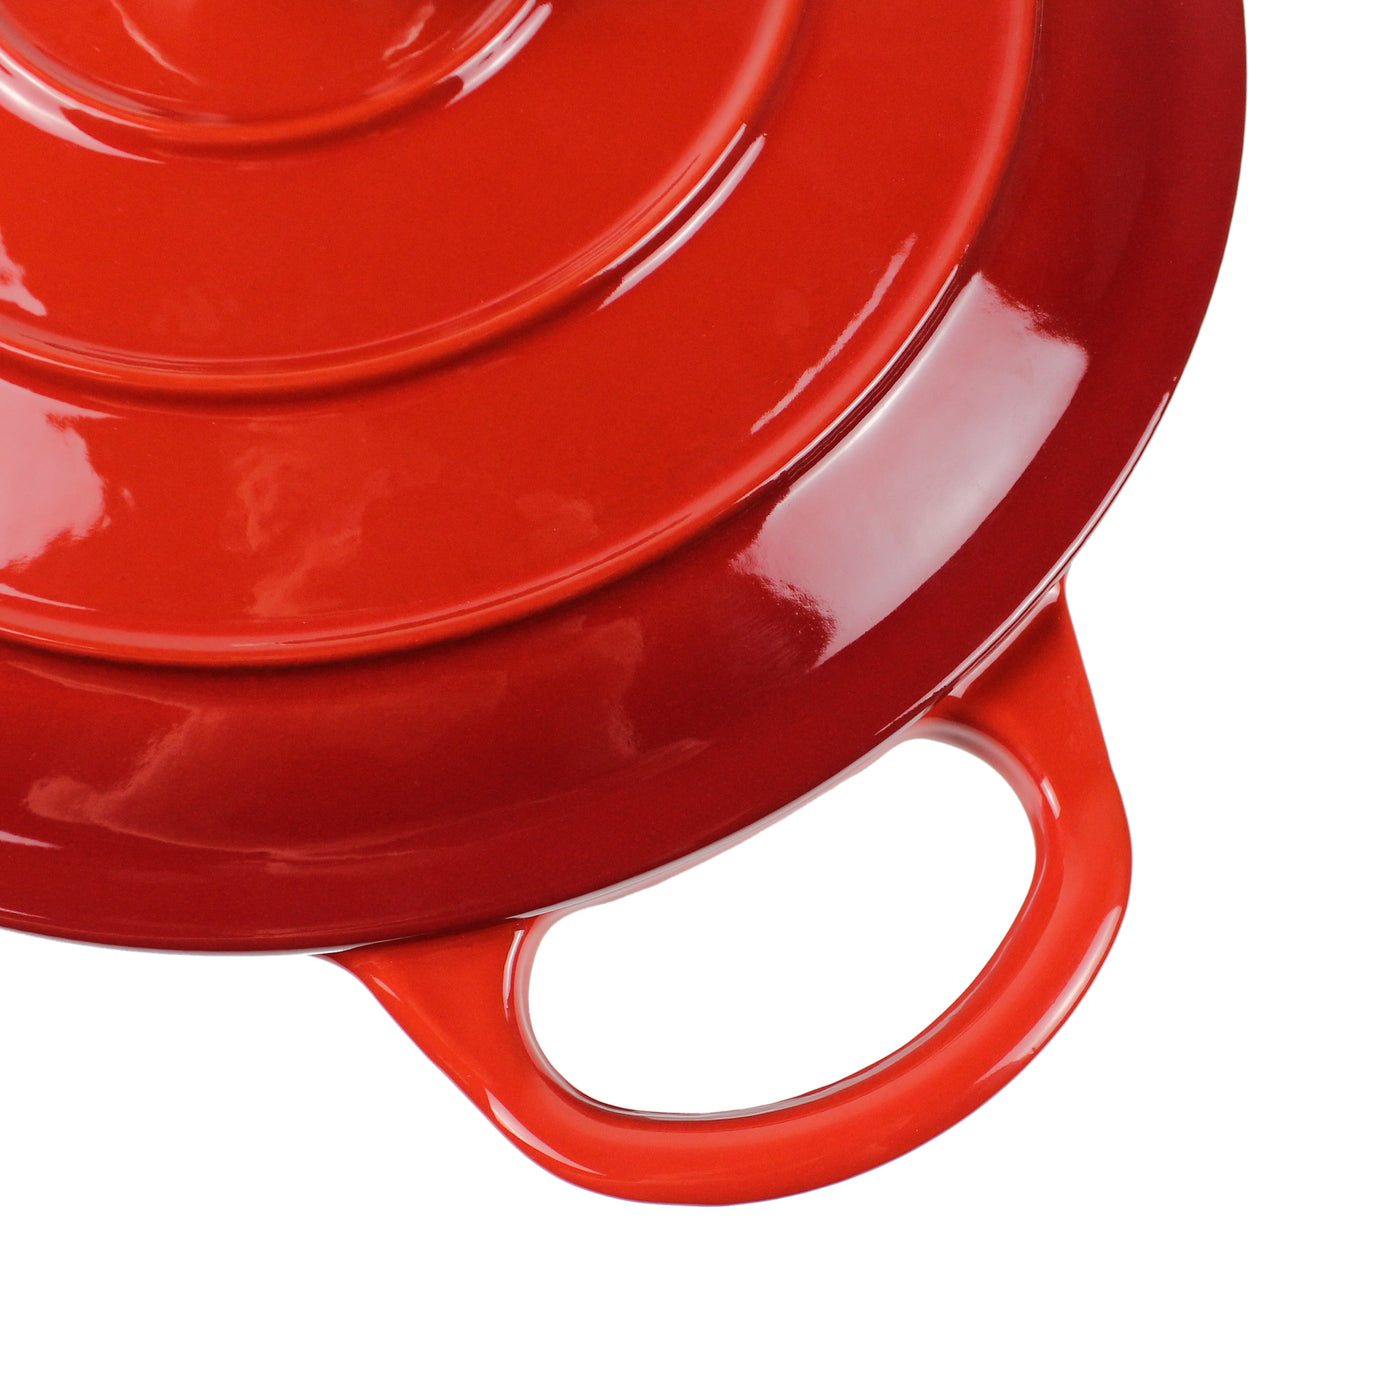 وعاء فرن هولندي من الحديد الزهر مطلي بالمينا، طبق كسرولة - أحمر دائري 10.23 بوصة (26 سم)